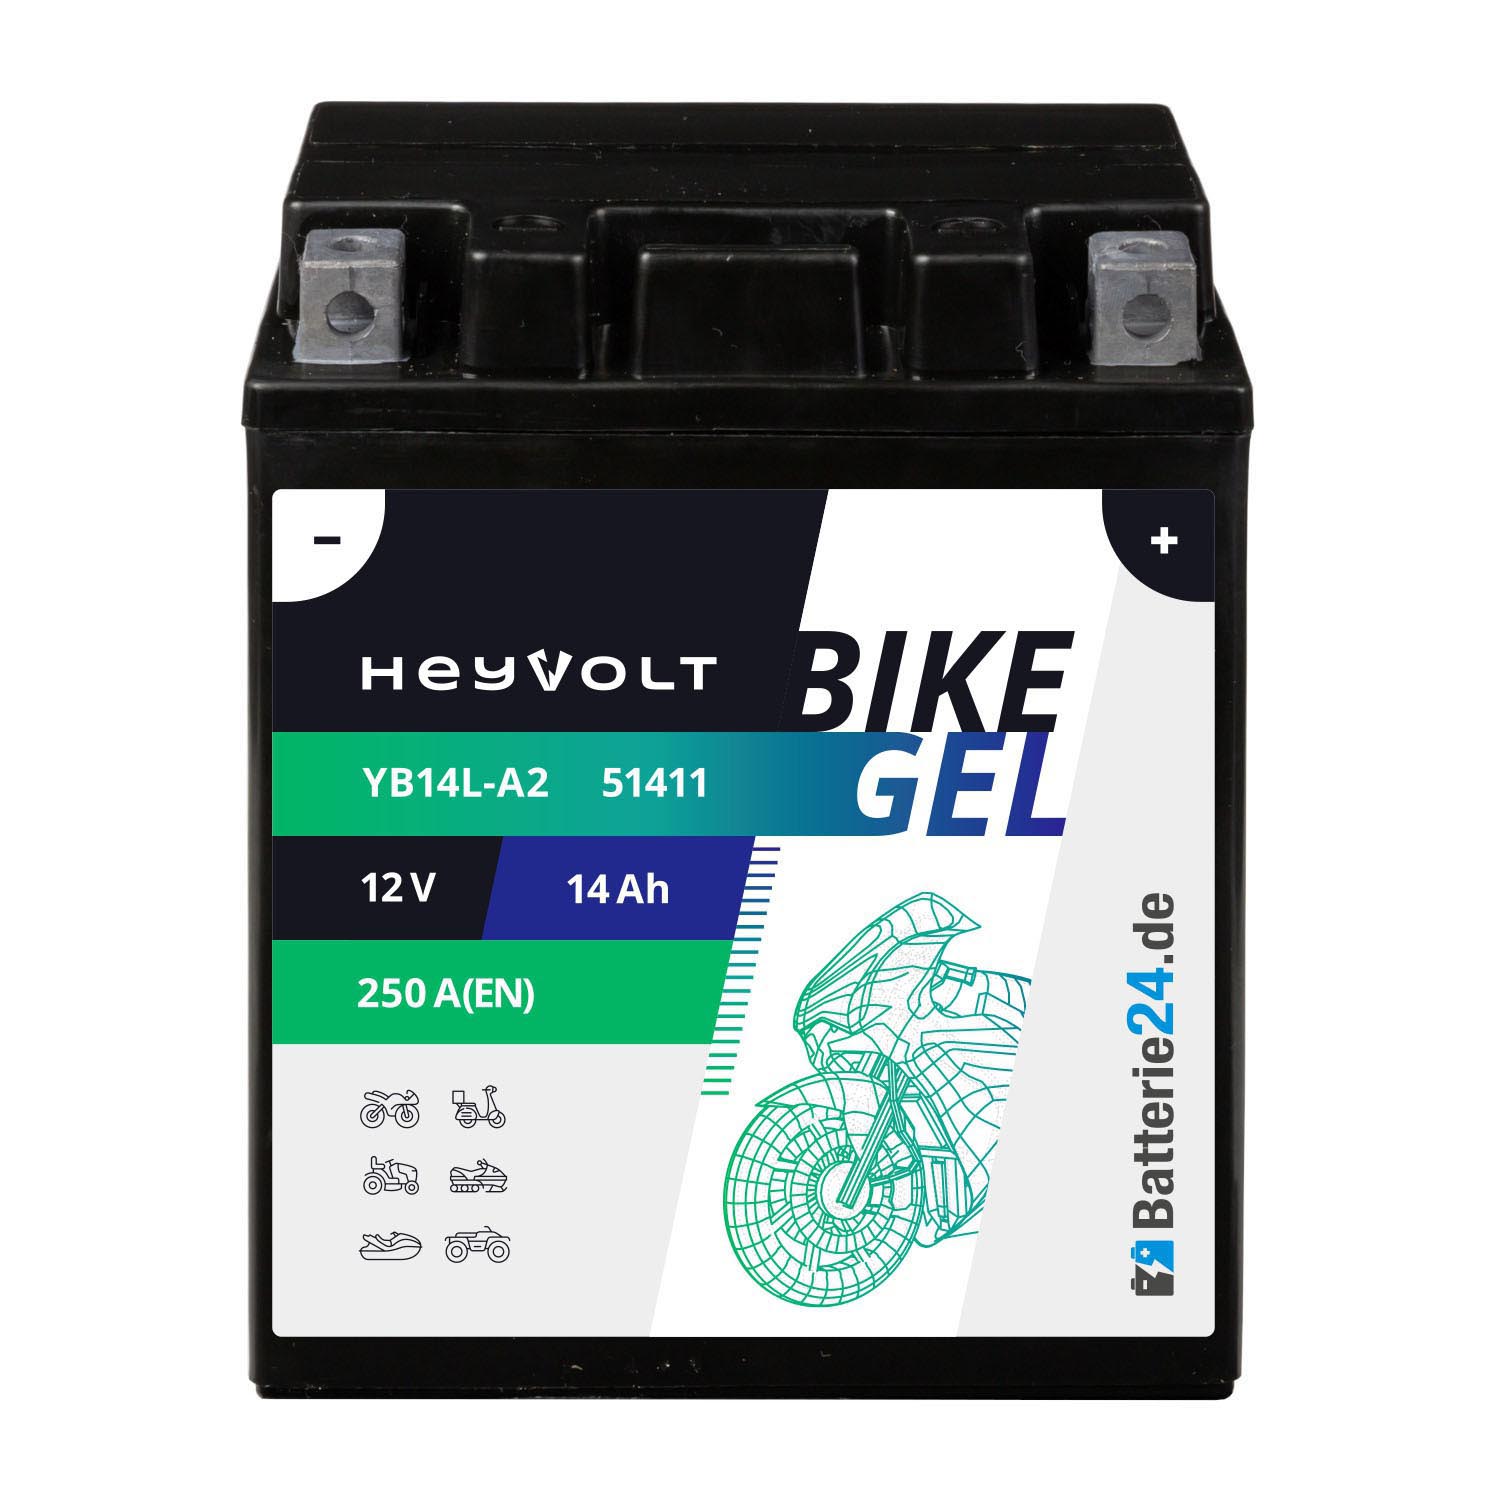 HeyVolt BIKE GEL Motorradbatterie YB14L-A2 51411 12V 14Ah